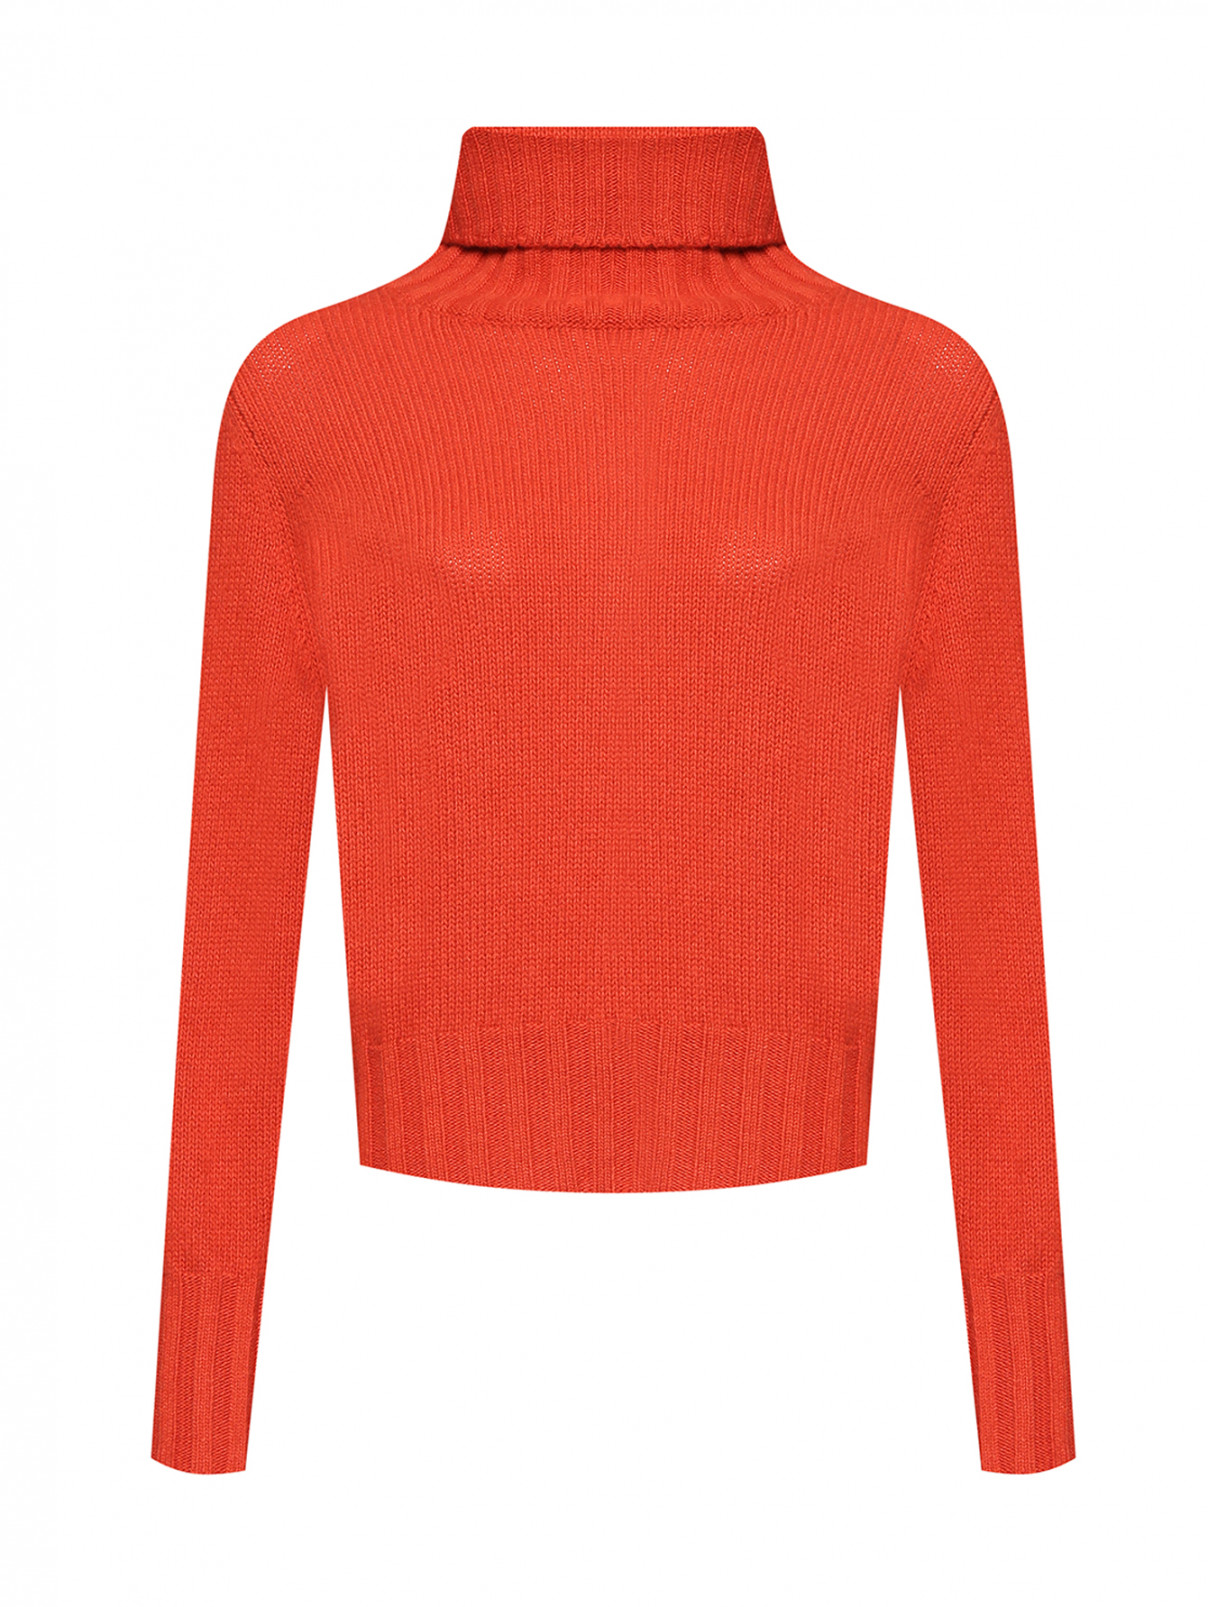 Свитер из шерсти и кашемира Luisa Spagnoli  –  Общий вид  – Цвет:  Оранжевый